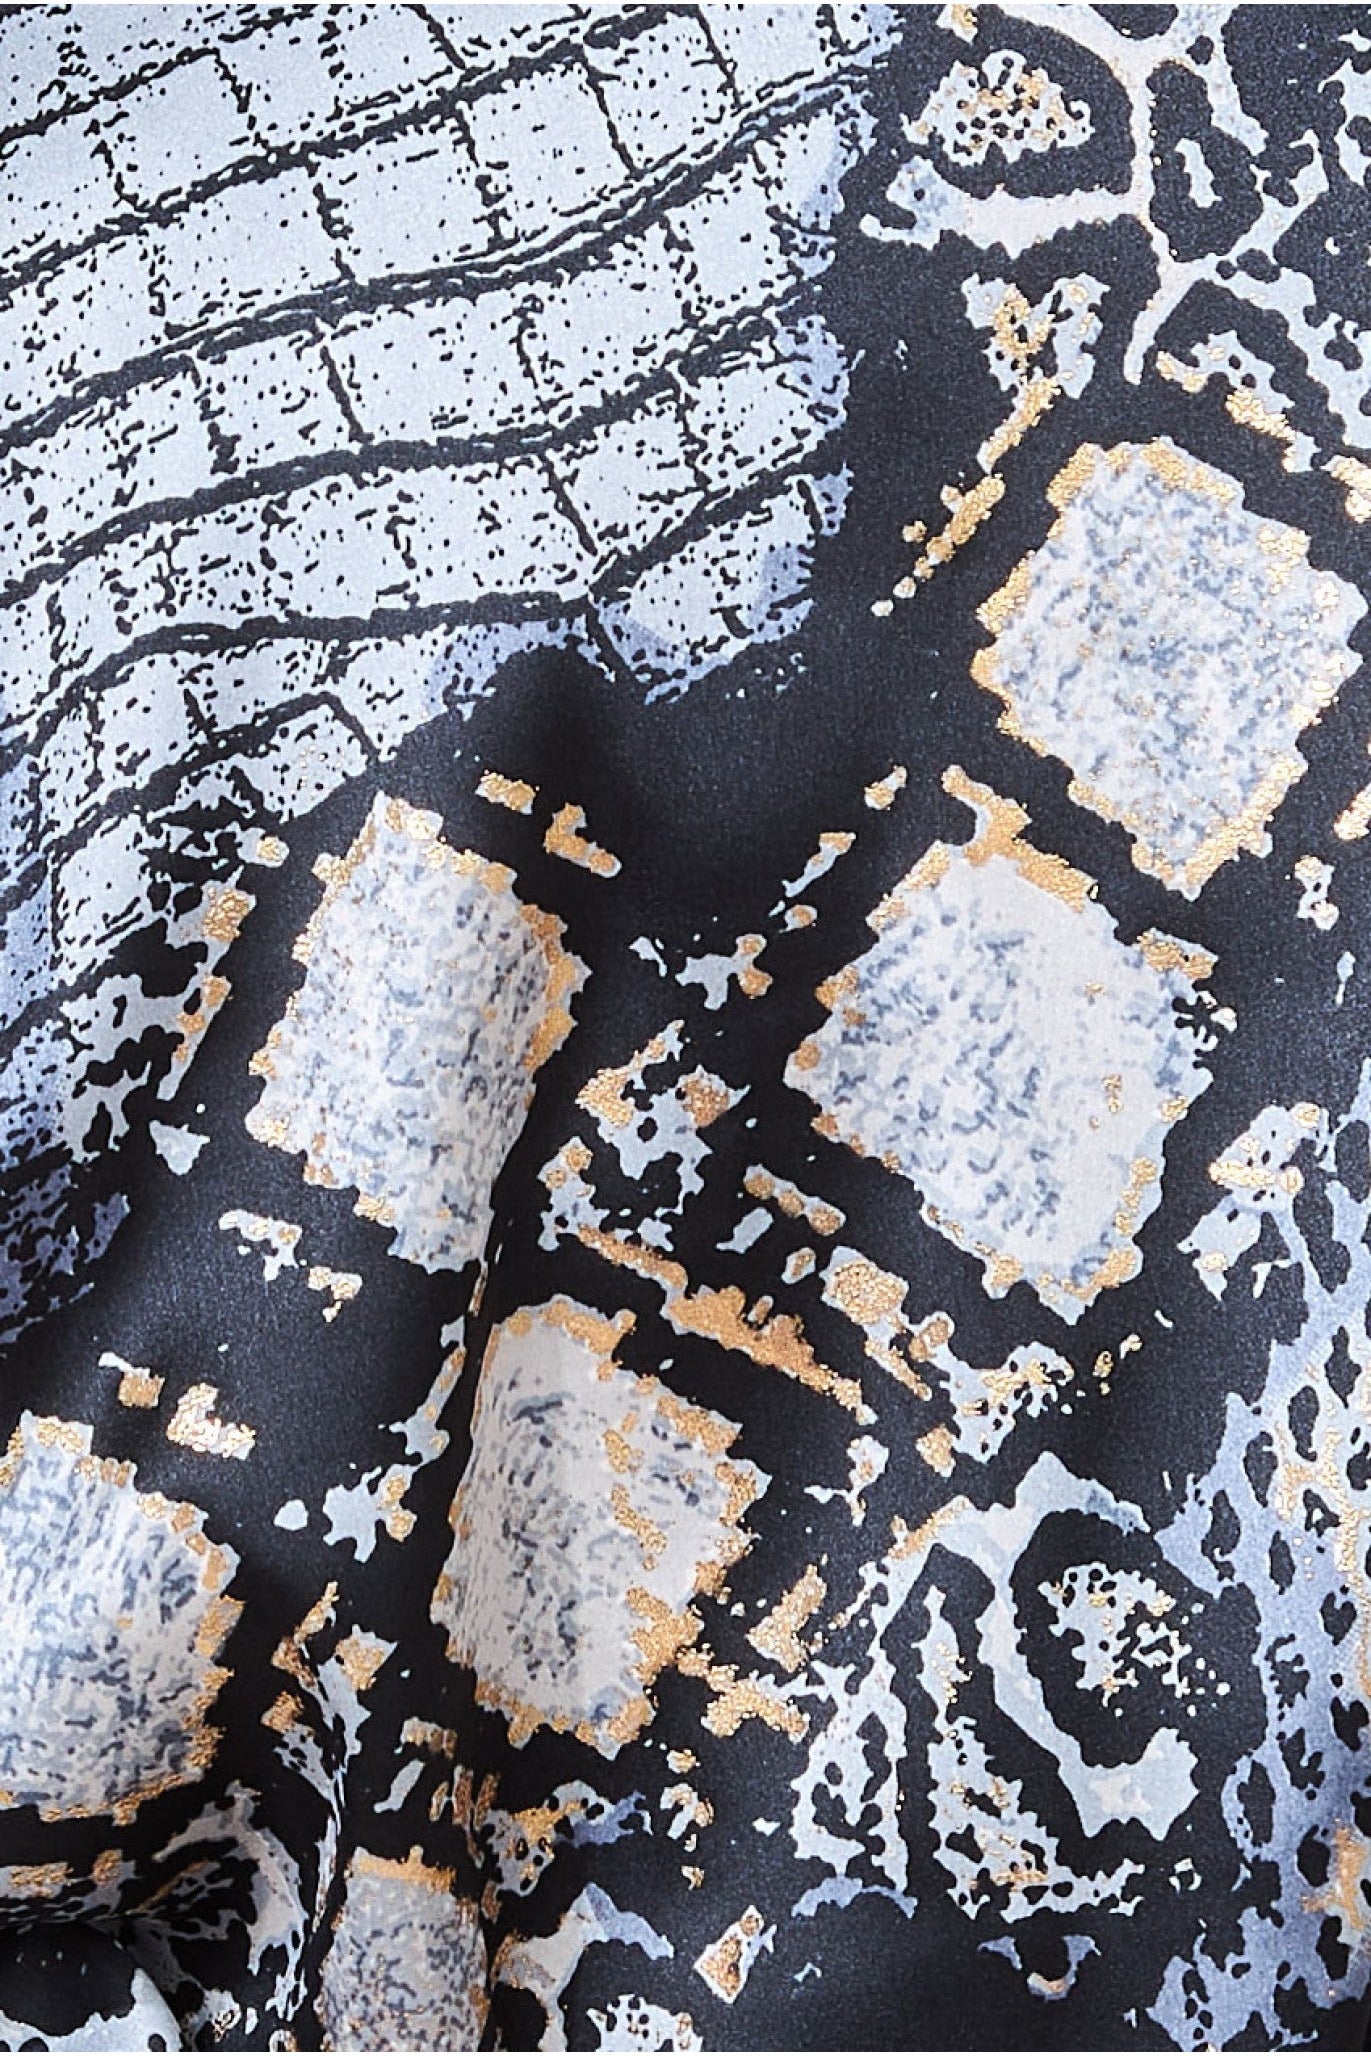 Goddiva Foil Print Kimono With Tassels - Black